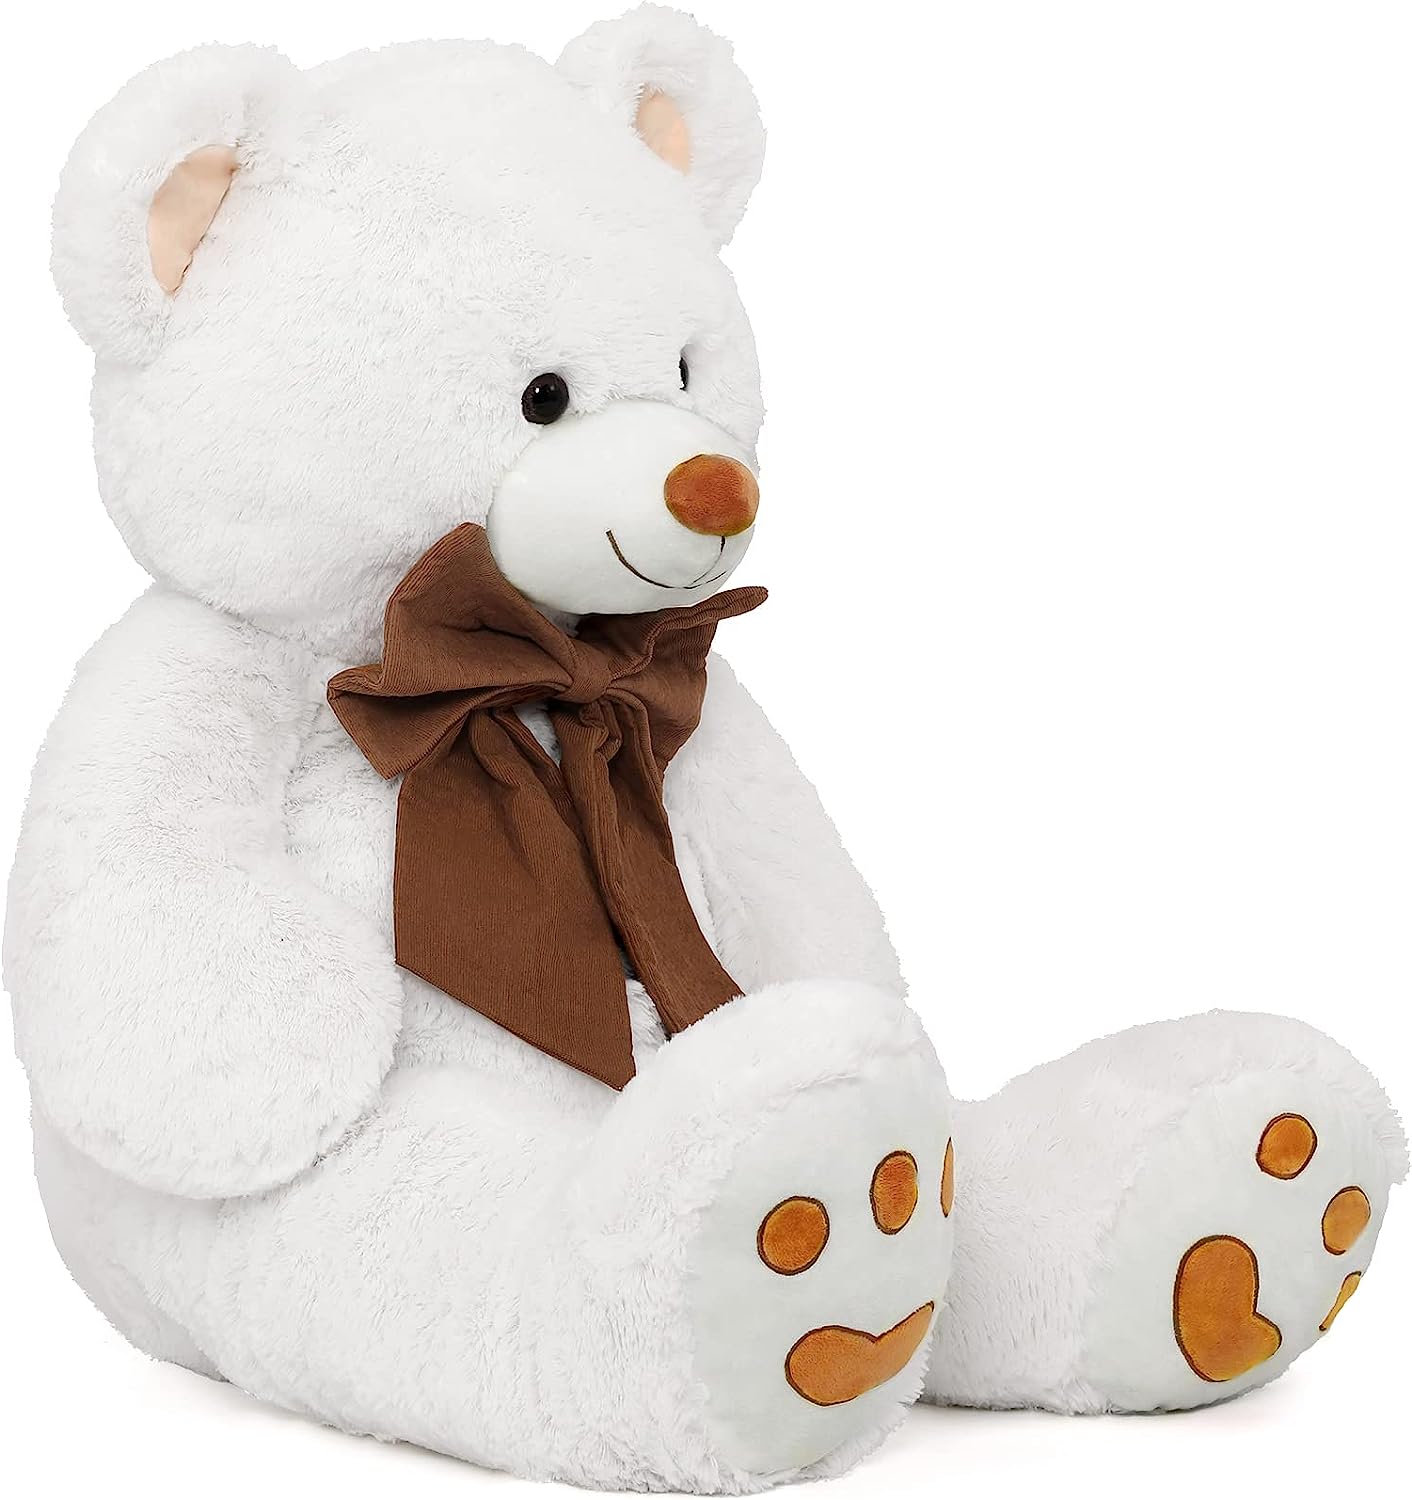 Riesiges Teddybär-Plüschtier, weiß, 47 Zoll